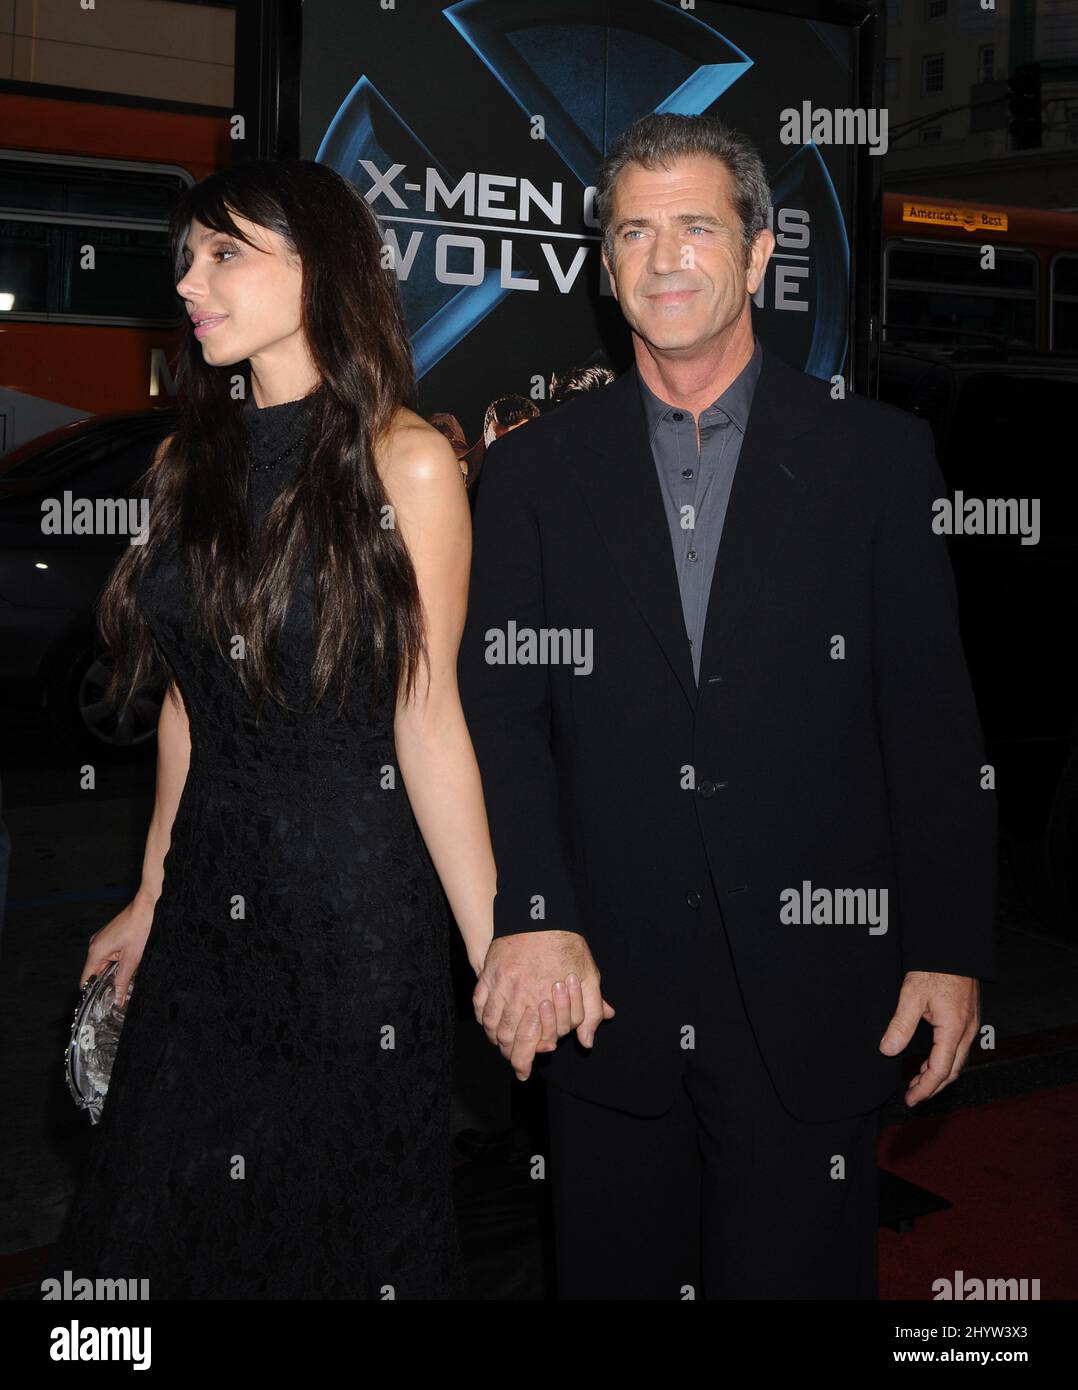 Mel Gibson e Oksana Grigorieva alla proiezione "X-Men Origins: Wolverine" di Los Angeles tenutasi al Grauman's Chinese Theatre, Los Angeles, USA. Foto Stock